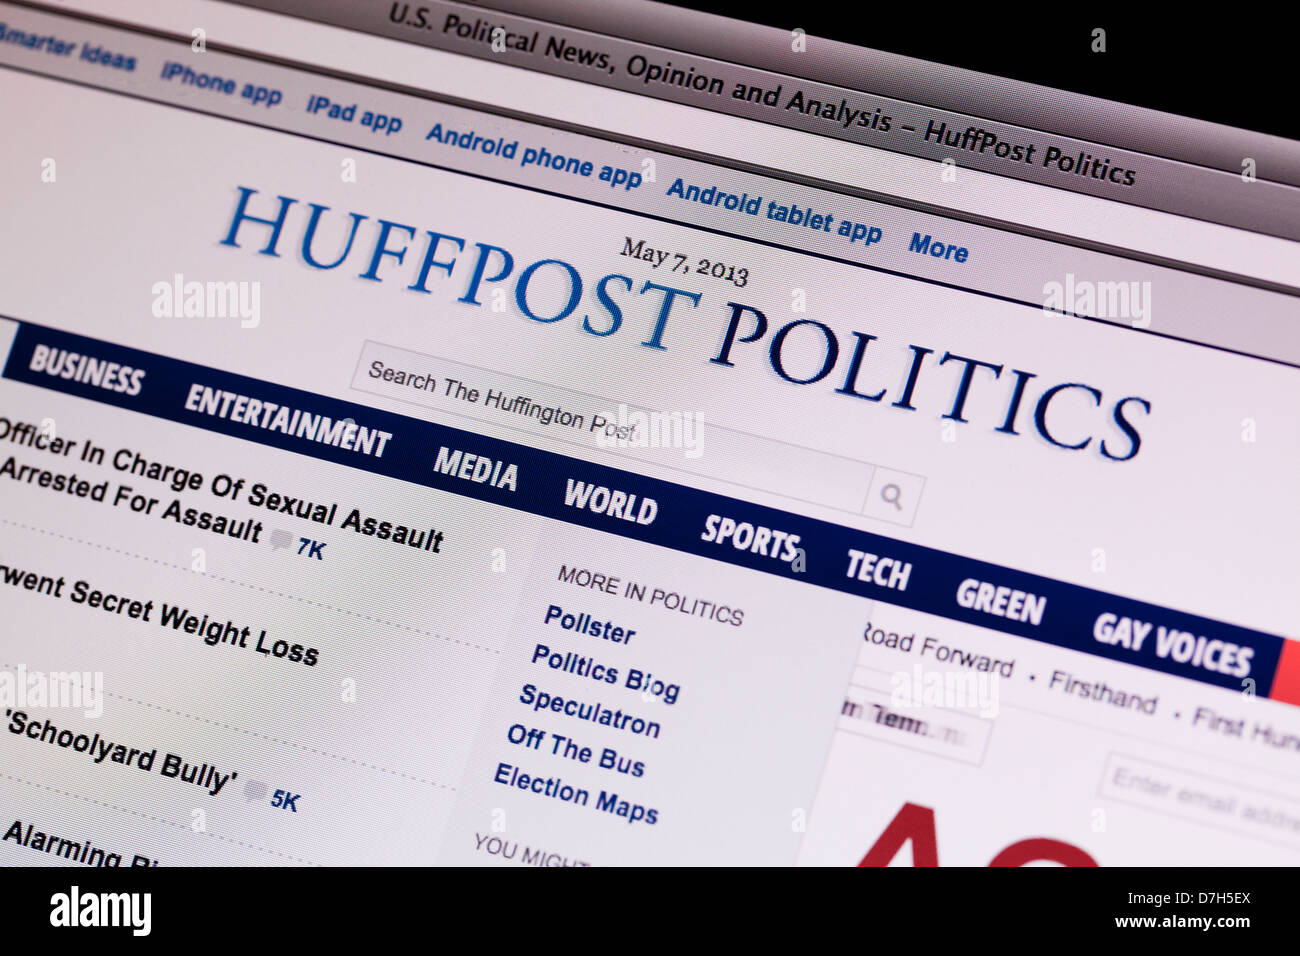 Huffington Post Politics website on screen Stock Photo